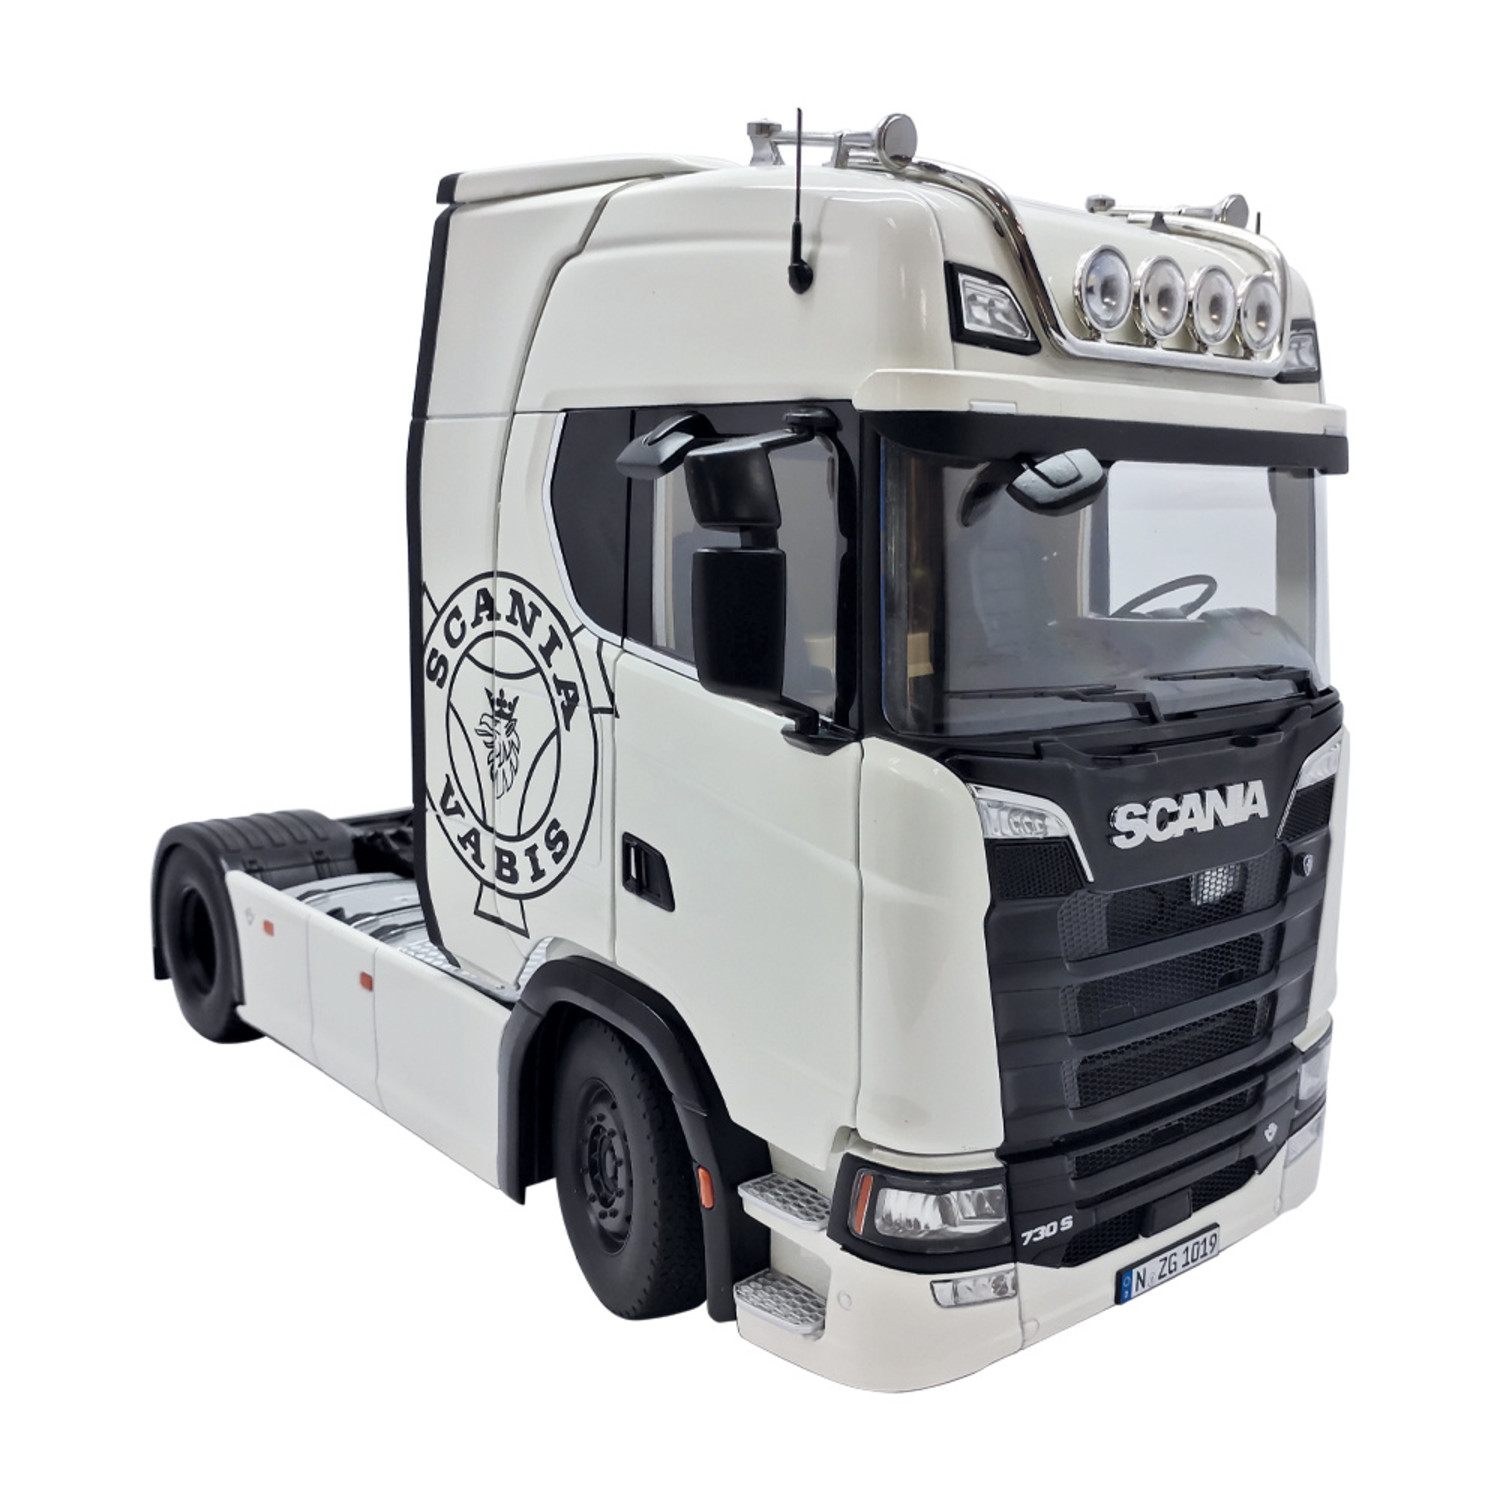 Sammler-Modell :: Lastwagen (LKW) :: Scania V8 730S 4x2